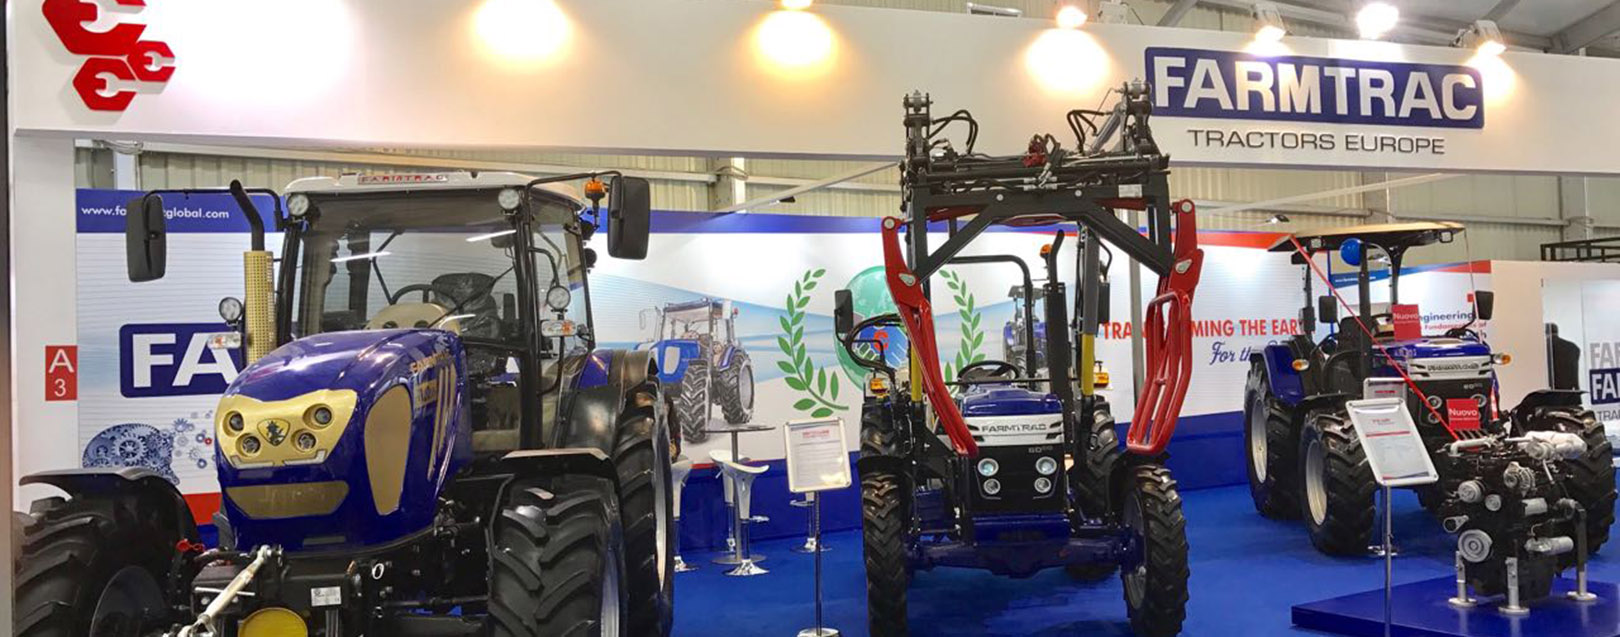 Escorts launches new 80 & 90 HP FARMTRAC tractors